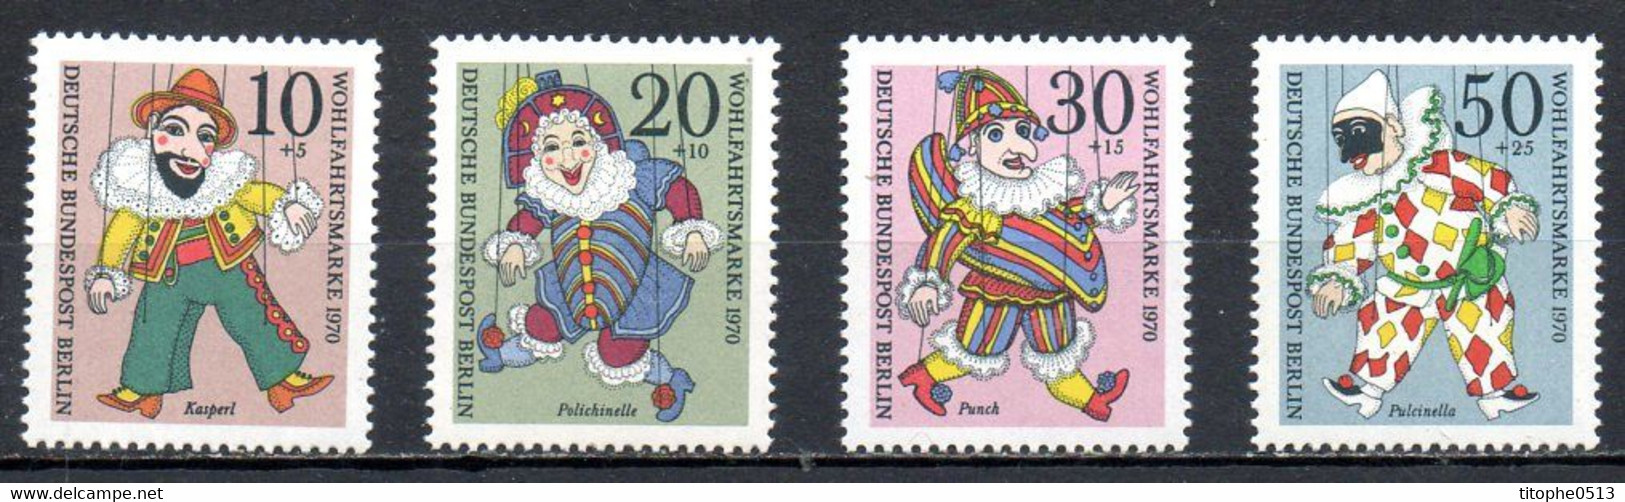 ALLEMAGNE BERLIN. N°335-8 De 1970. Marionnettes. - Marionette